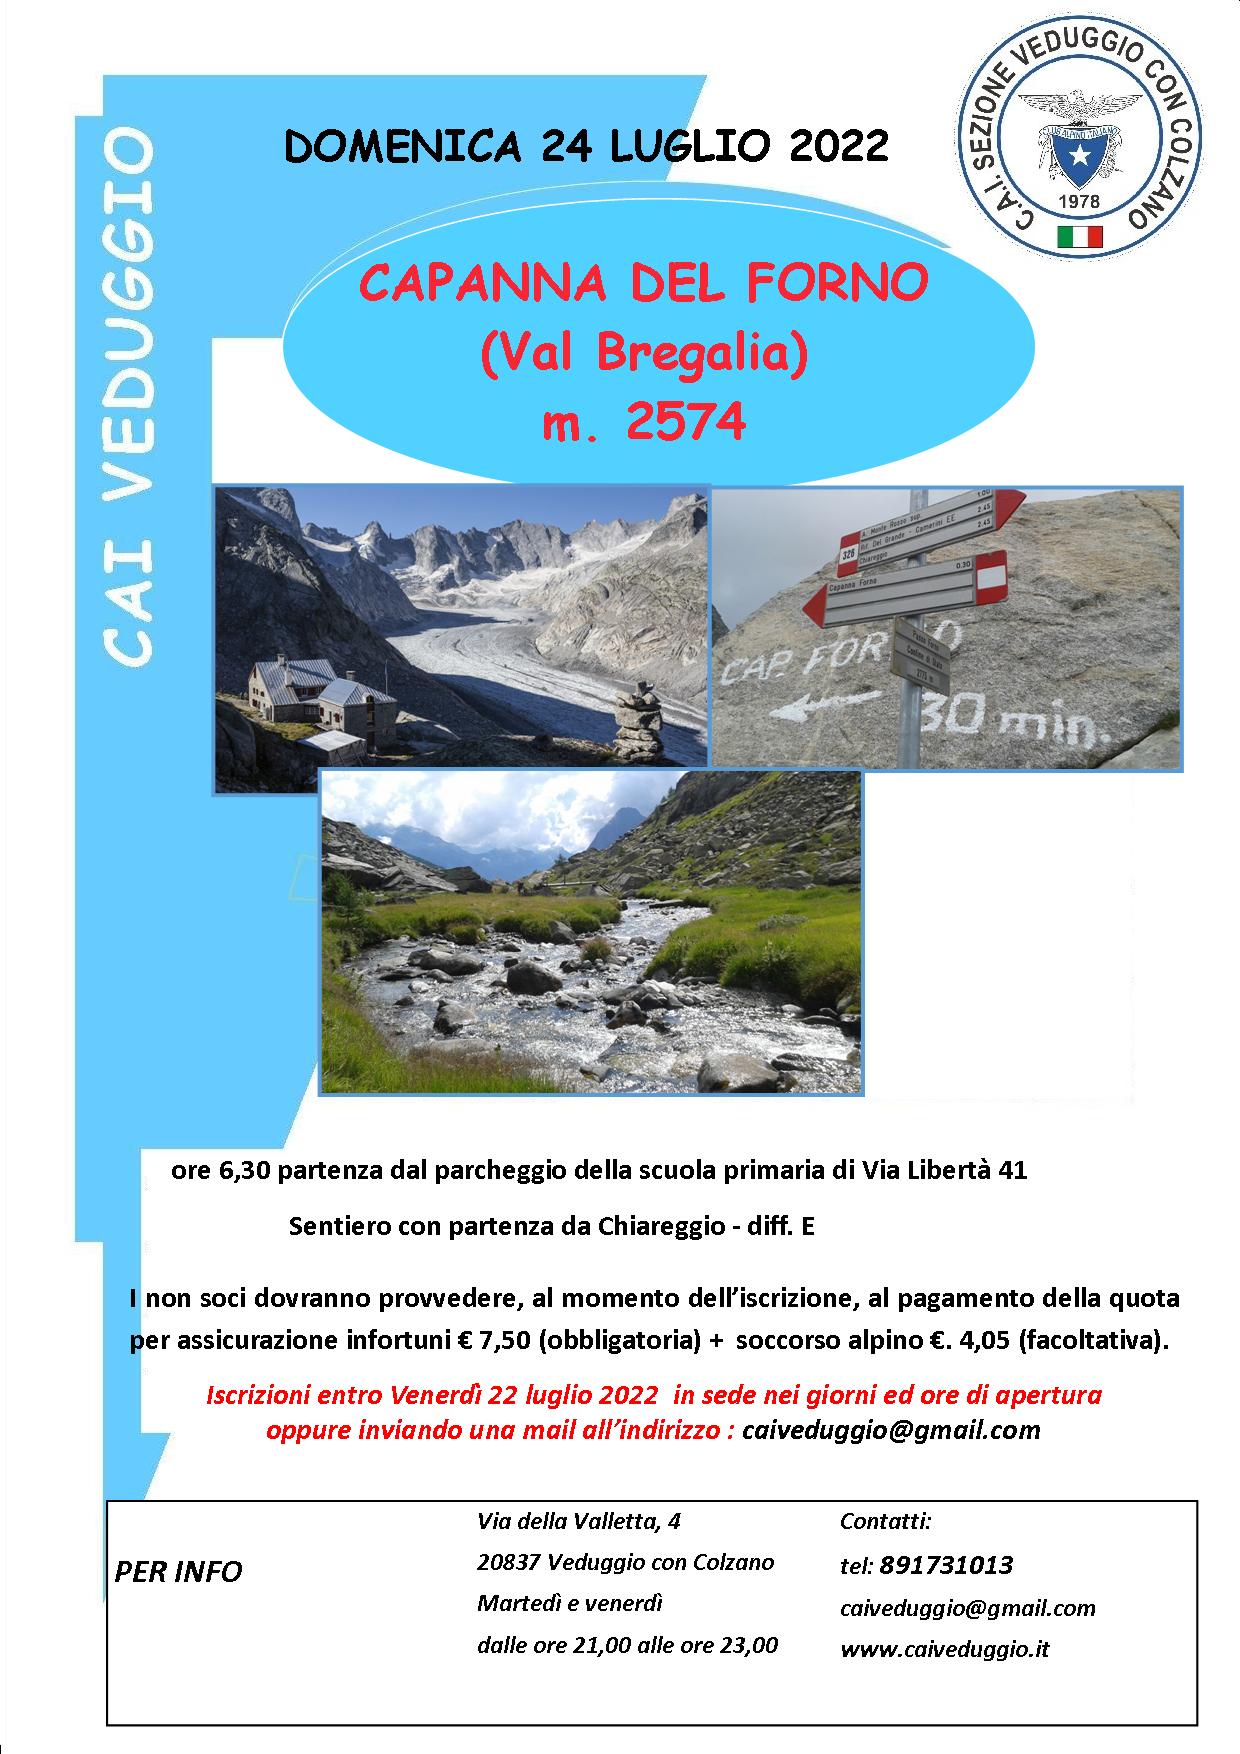 Domenica 24 luglio 2022 – Capanna del Forno (Val Bregaglia)